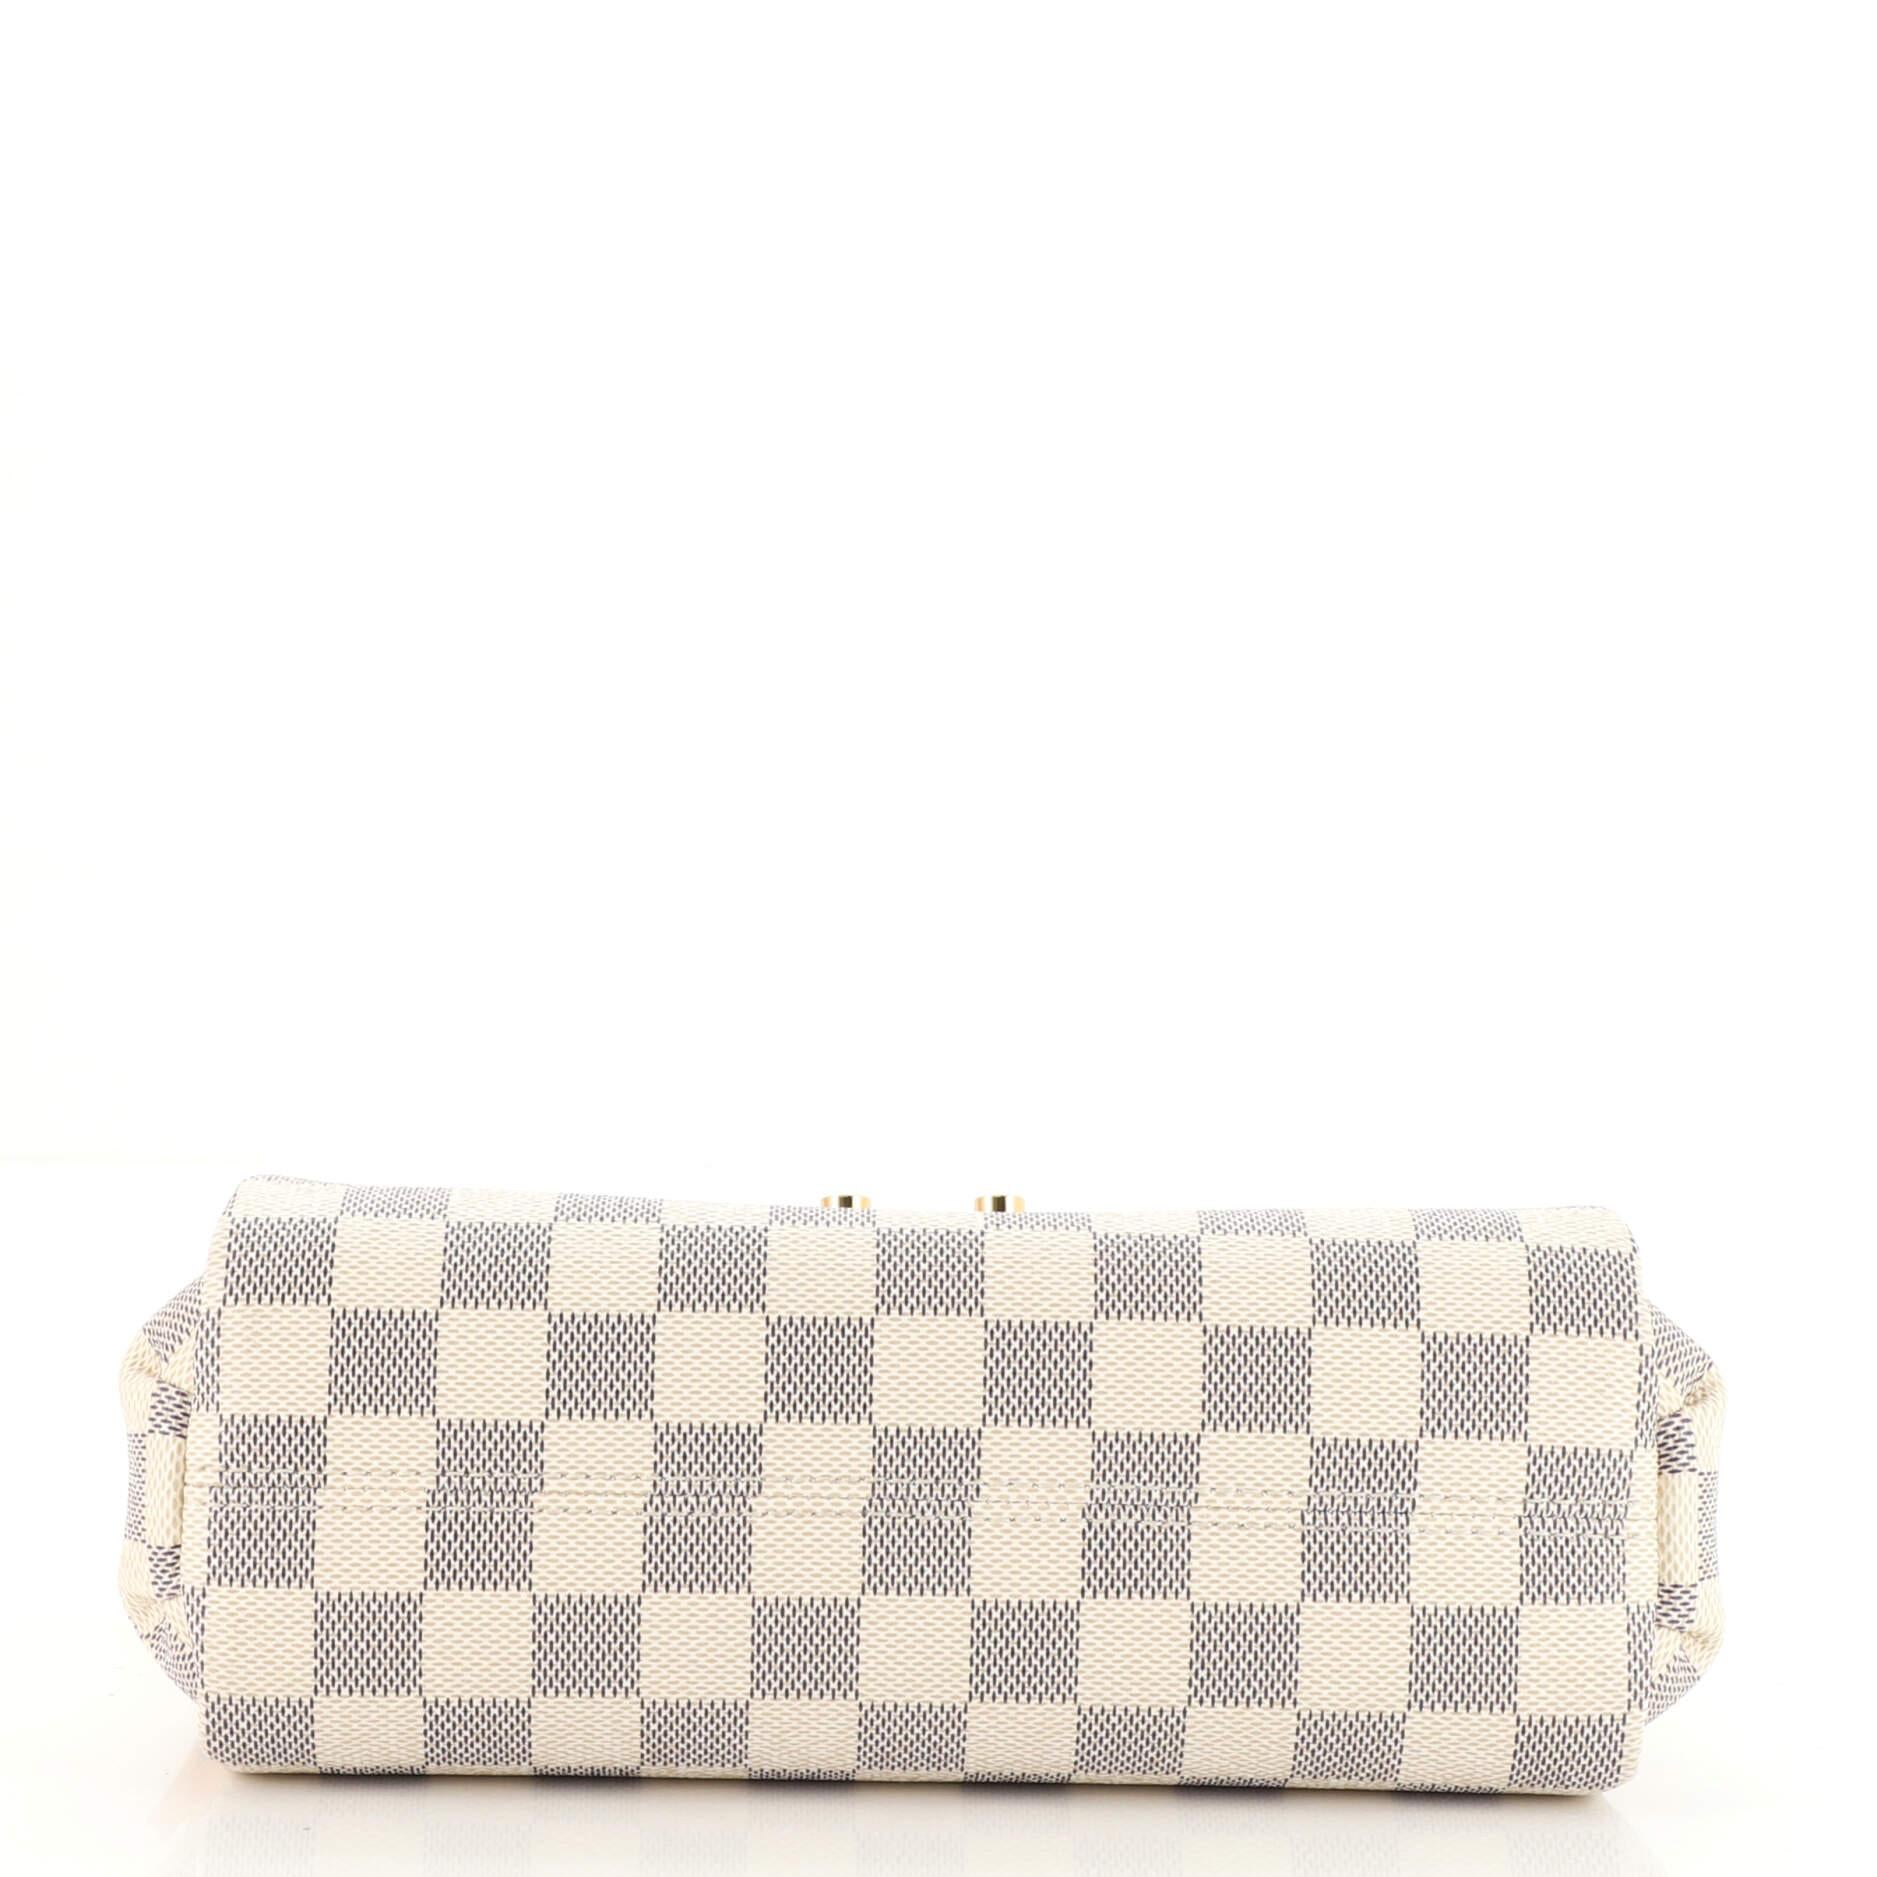 Beige Louis Vuitton Croisette Handbag Damier